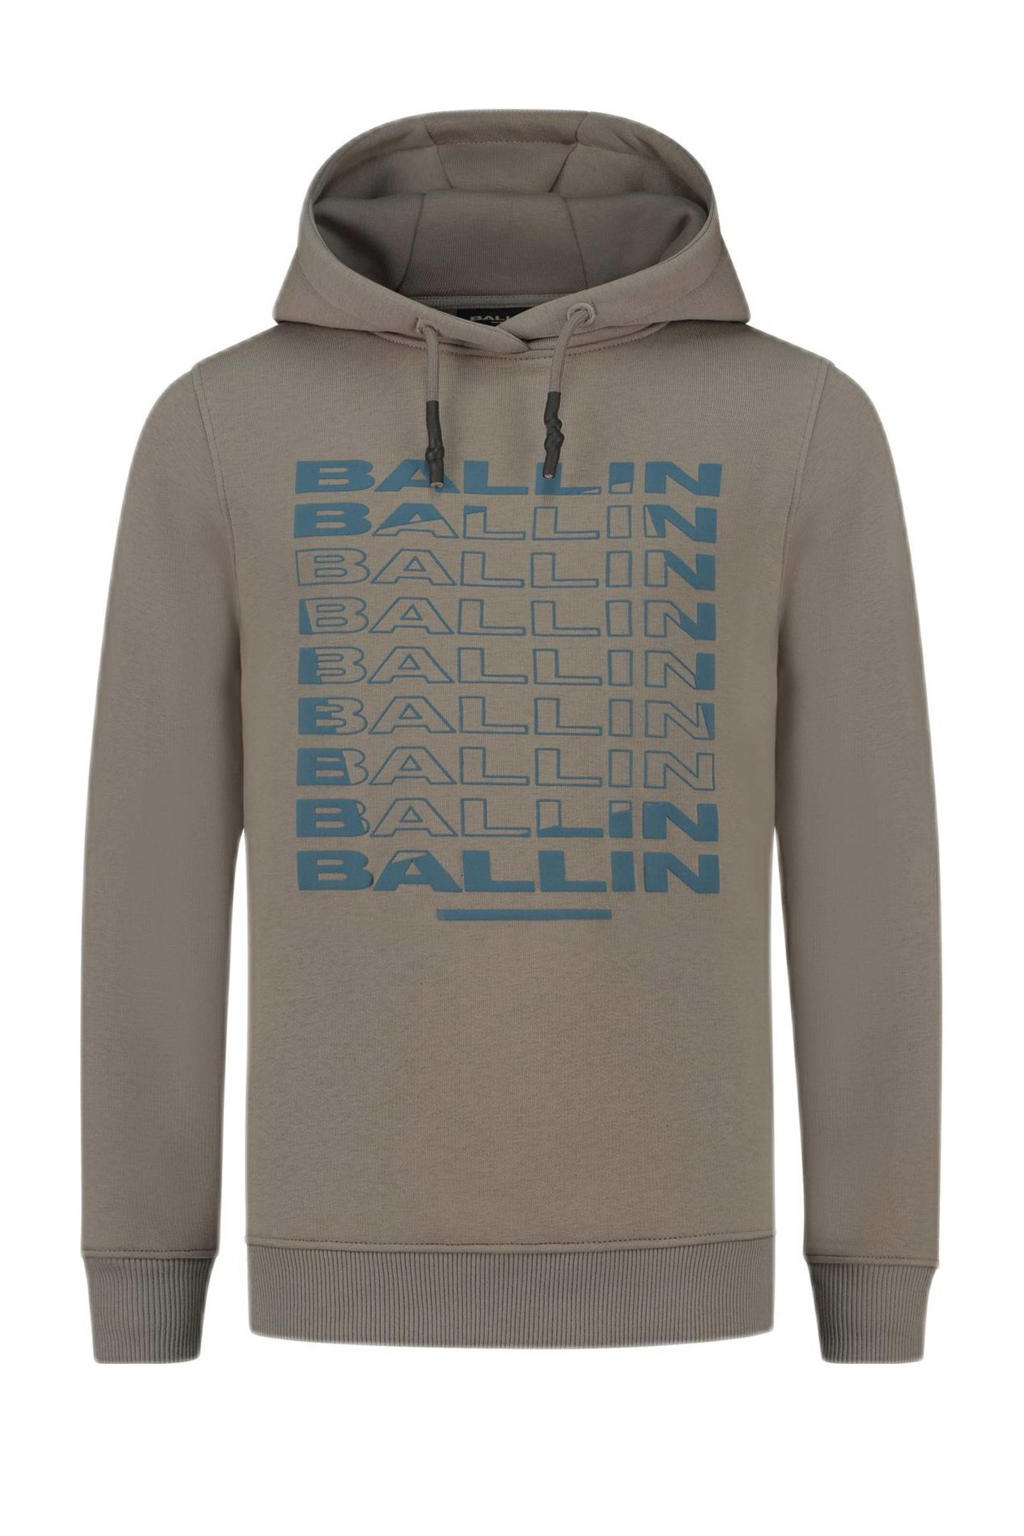 Taupe jongens Ballin hoodie van sweat materiaal met printopdruk, lange mouwen, capuchon en geribde boorden